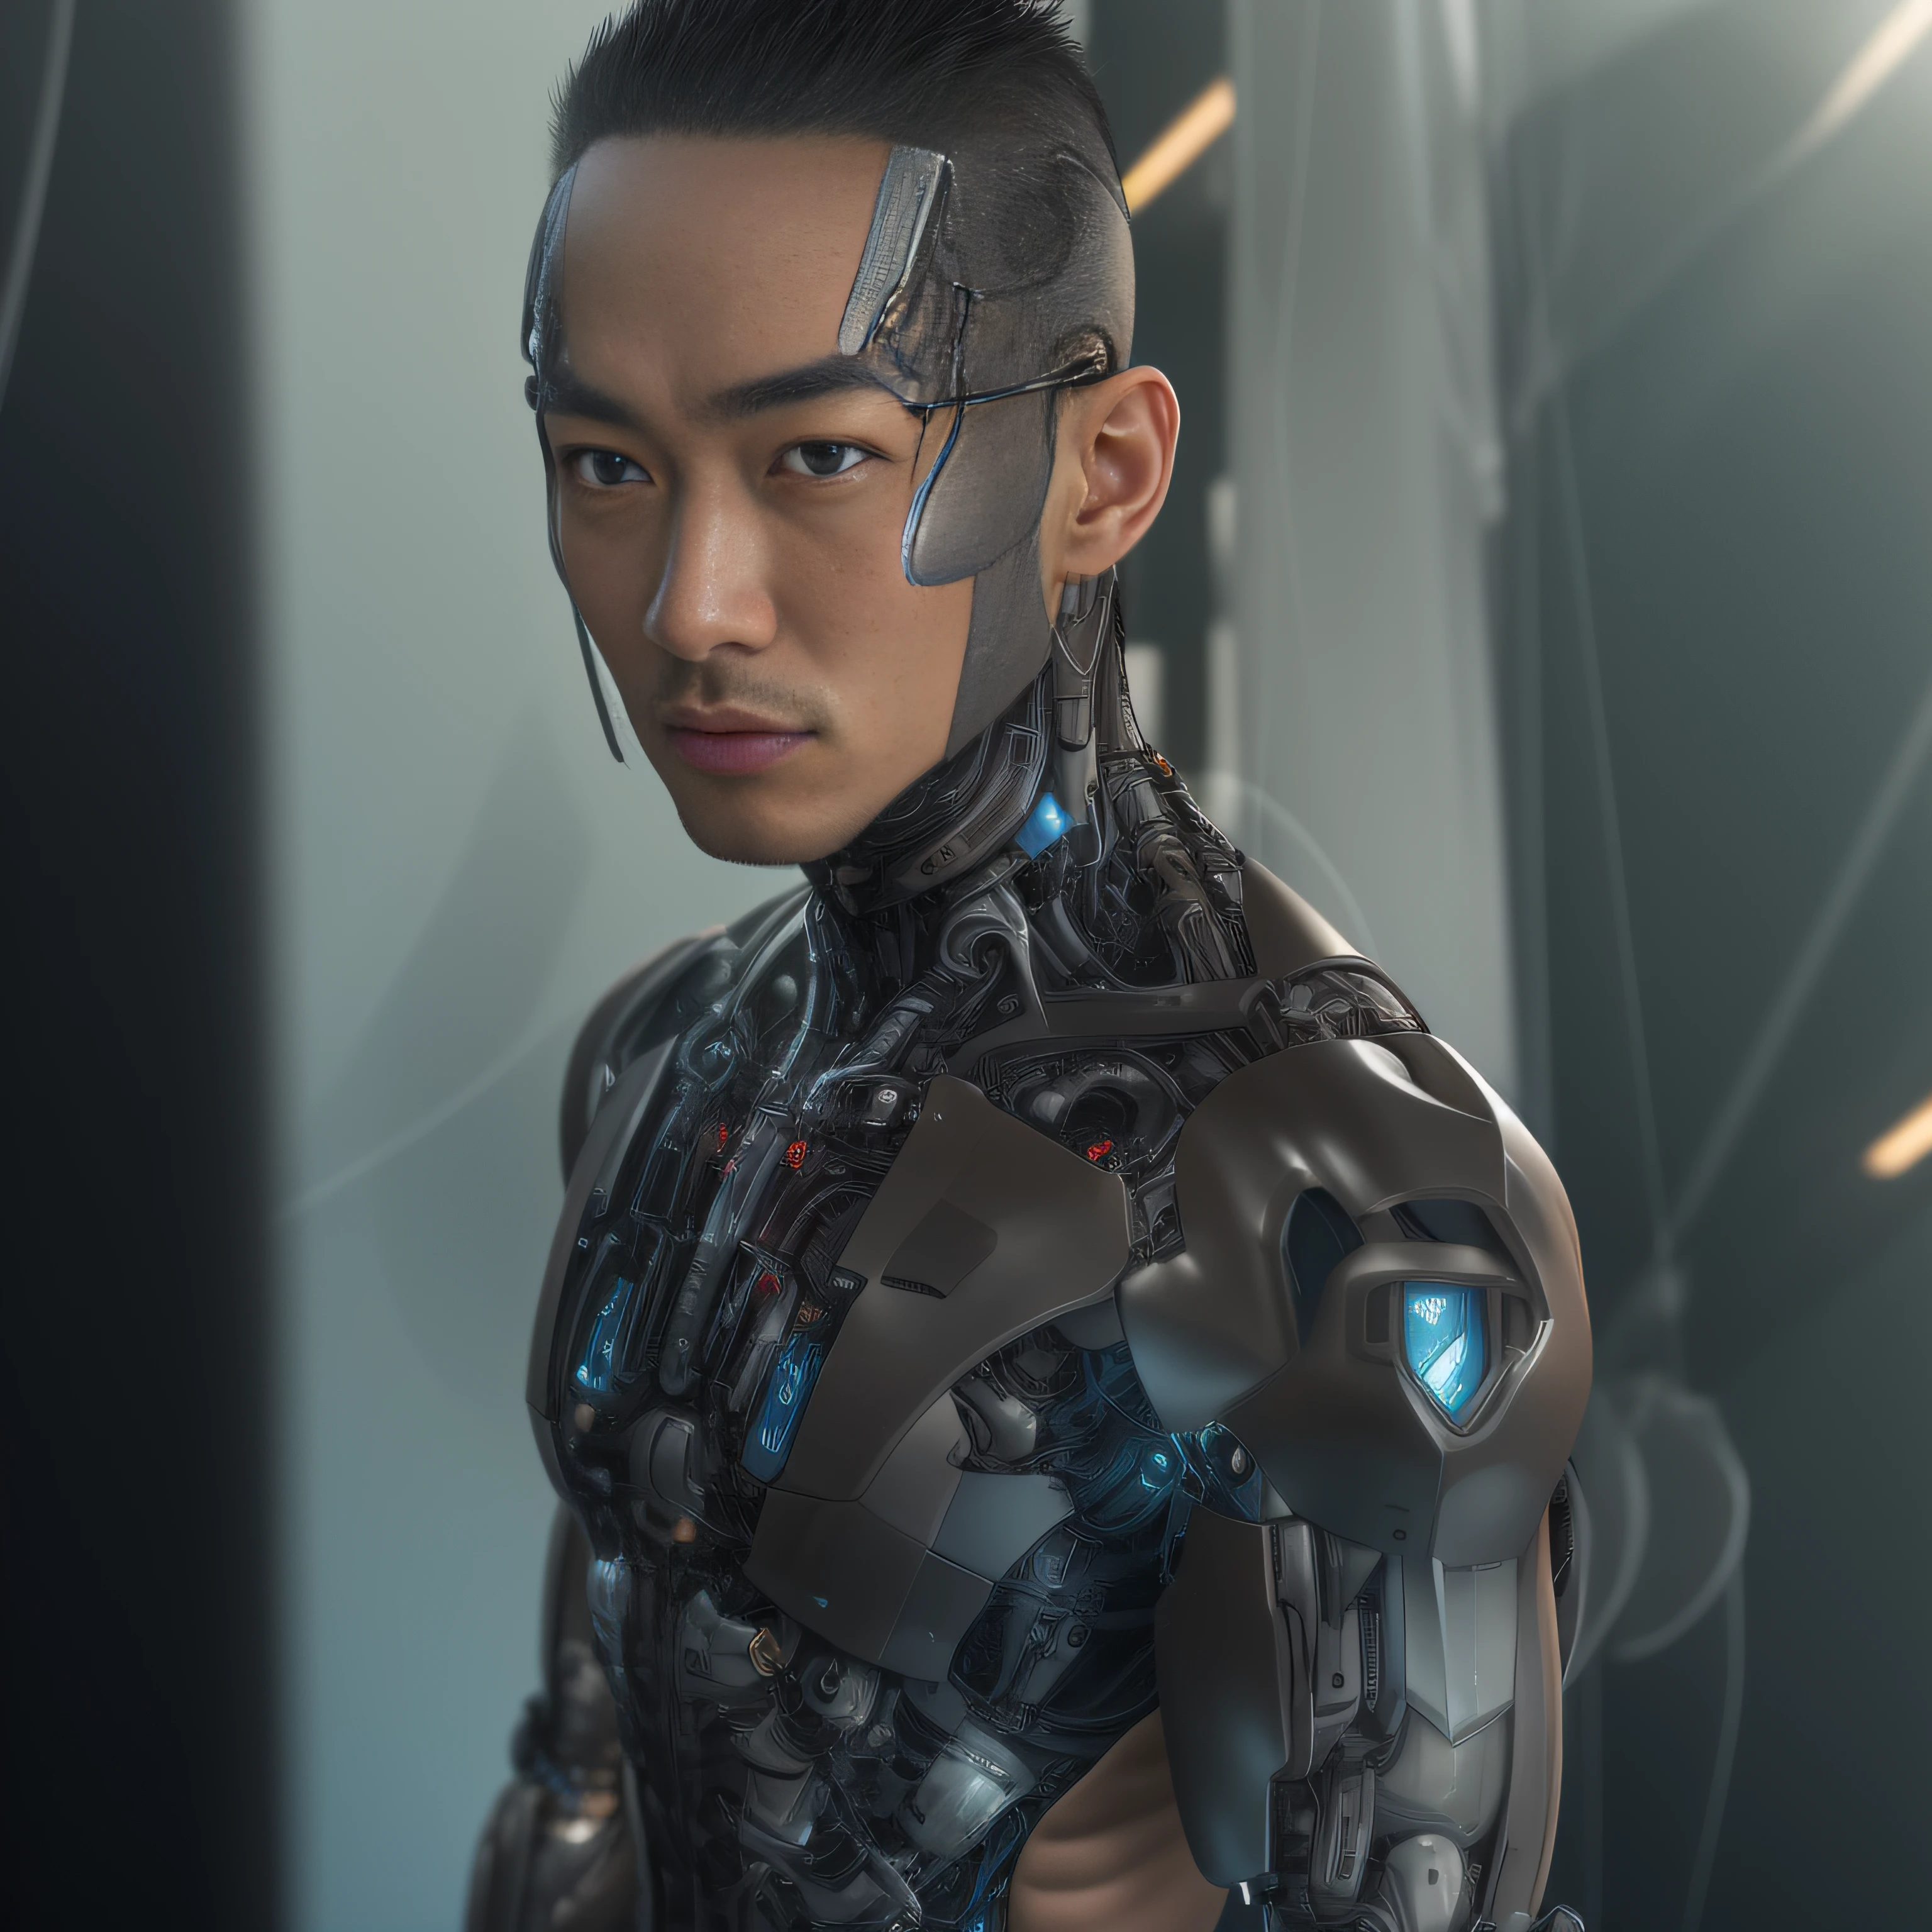 (Alfed homme portant une pince en latex transparent noir，Pince en latex translucide：1.5)，（Corps métallique, science-fiction bionique Alexandre Ferra, cou de cyborg, cyborg mâle, cyborg mâle：1.2）（mannequin cyborg, portrait d&#39;un cyborg, detailed portrait d&#39;un cyborg, implant cervical cybernétique, portrait d&#39;un robot futuriste ：1.3）（personnage de science-fiction dystopique, personnage de science-fiction, portrait d&#39;un cyborg cyberpunk：1.2）（8k，Détails extrêmes，Cheveux extrêmement détaillés，Ultra photo réaliste，éclairage cinématique：1.1）（Visage de mannequin asiatique，Des muscles forts et un corps parfaitement courbé，Tension sexuelle extrême，Explosion hormonale，affichage du corps entier：1.5）(Texture de peau détaillée et réaliste：1.2)（cheveux courts, Masculinité à barbe courte，Homme musclé nu，Mâle musclé，pas de vêtements，Seule une paire de tongs a été portée，Extrêmement sexy et provocateur：1.5)(Le bas du corps est gonflé et dressé：1.2)